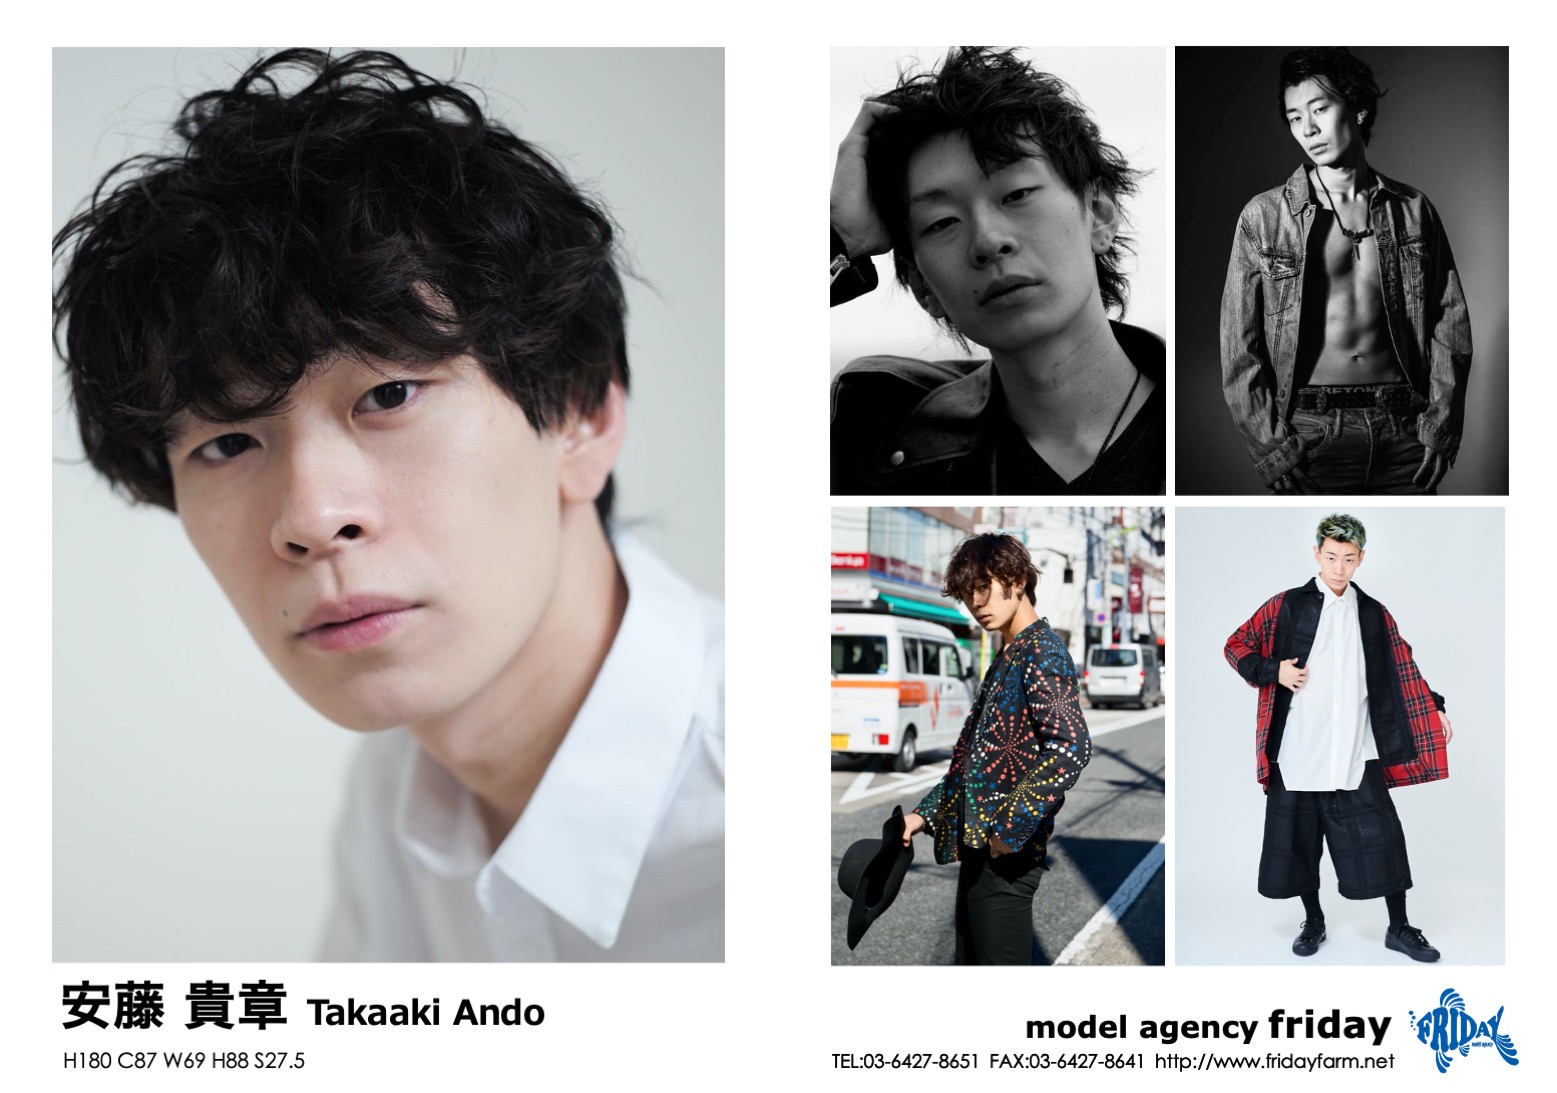 安藤貴章 - Takaaki Ando | model agency friday